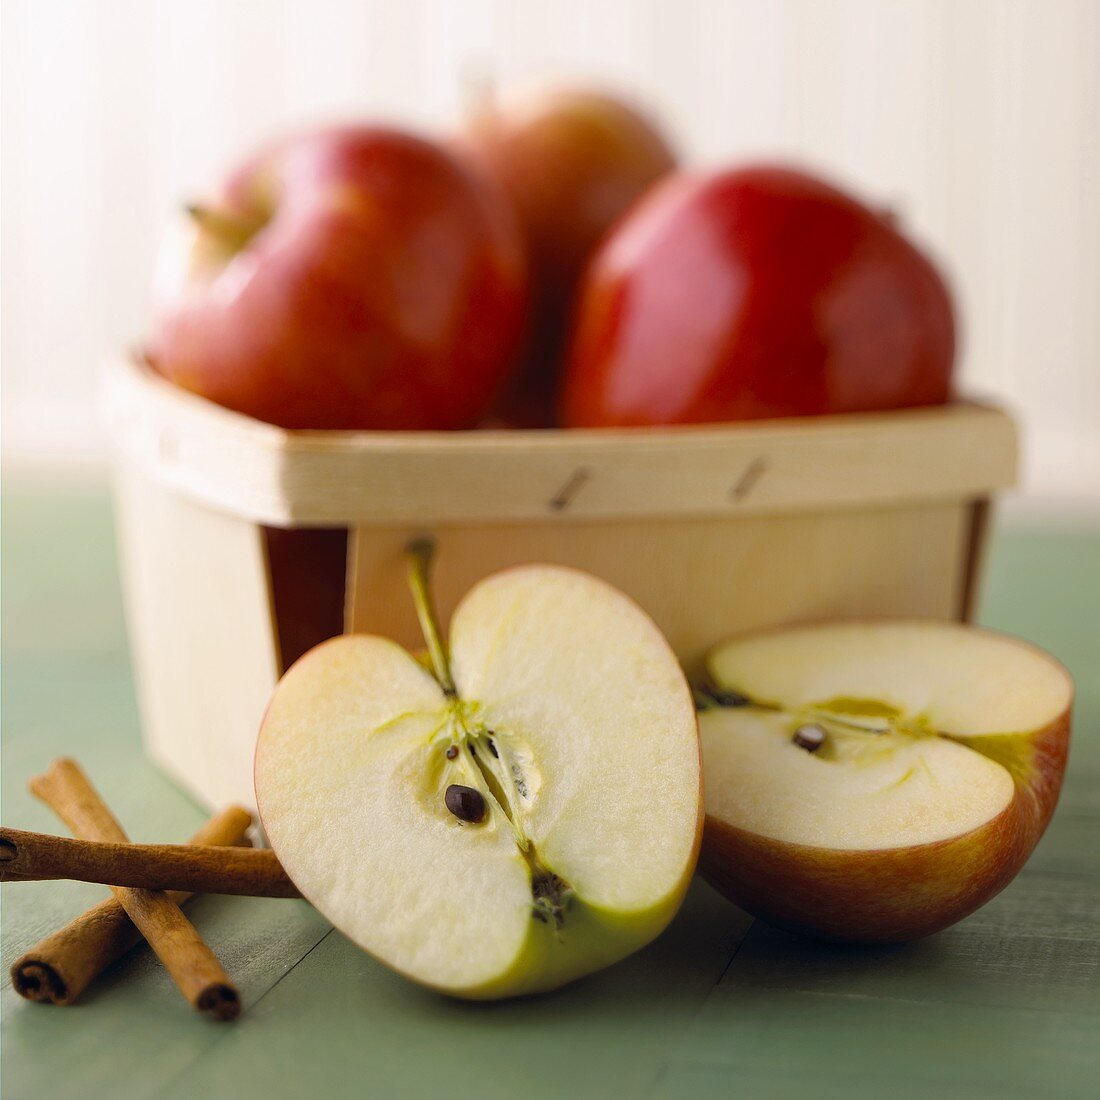 Äpfel im Spankorb, davor zwei Apfelhälften und Zimtstangen